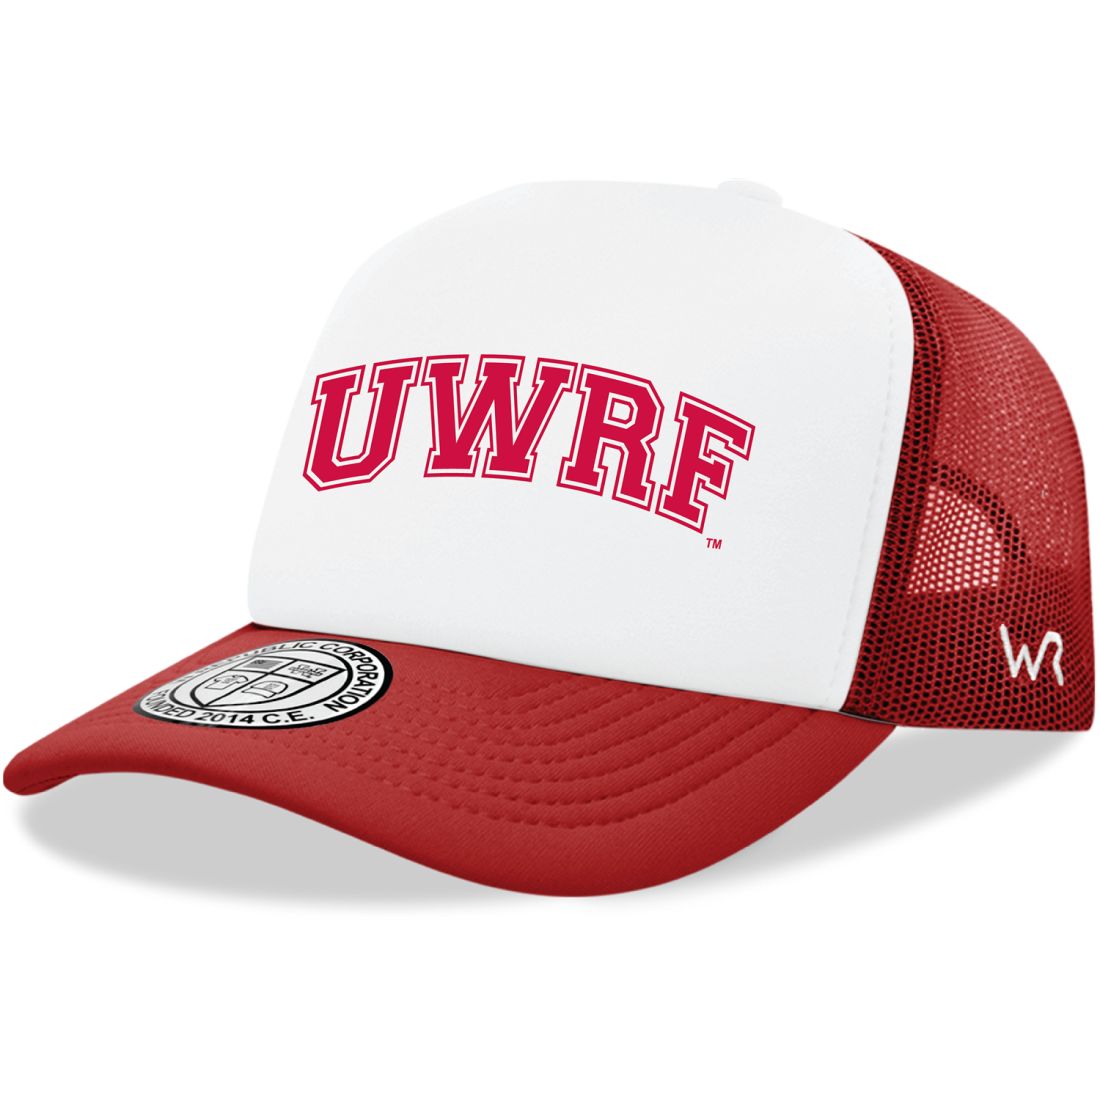 UWRF University of Wisconsin River Falls Falcons Practice Foam Trucker Hats